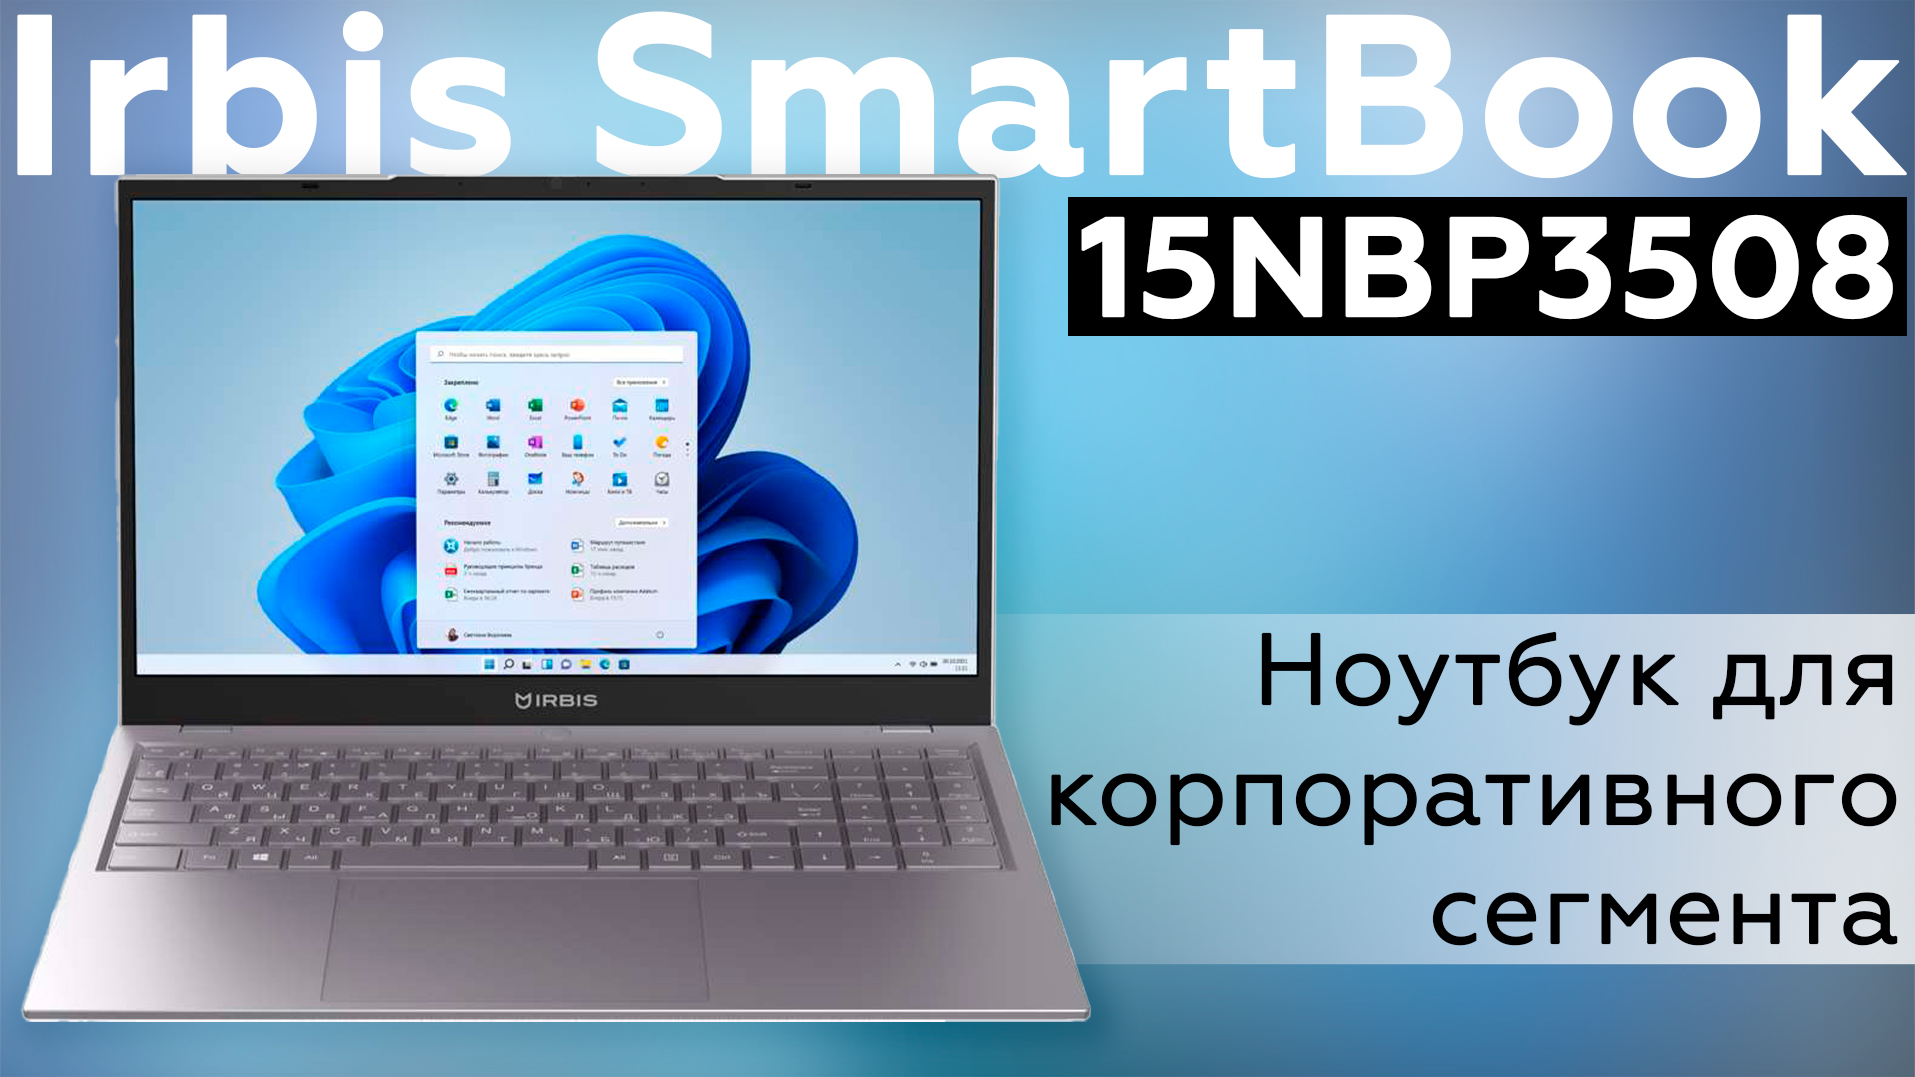 Обзор ноутбука Irbis SmartBook 15NBP3508